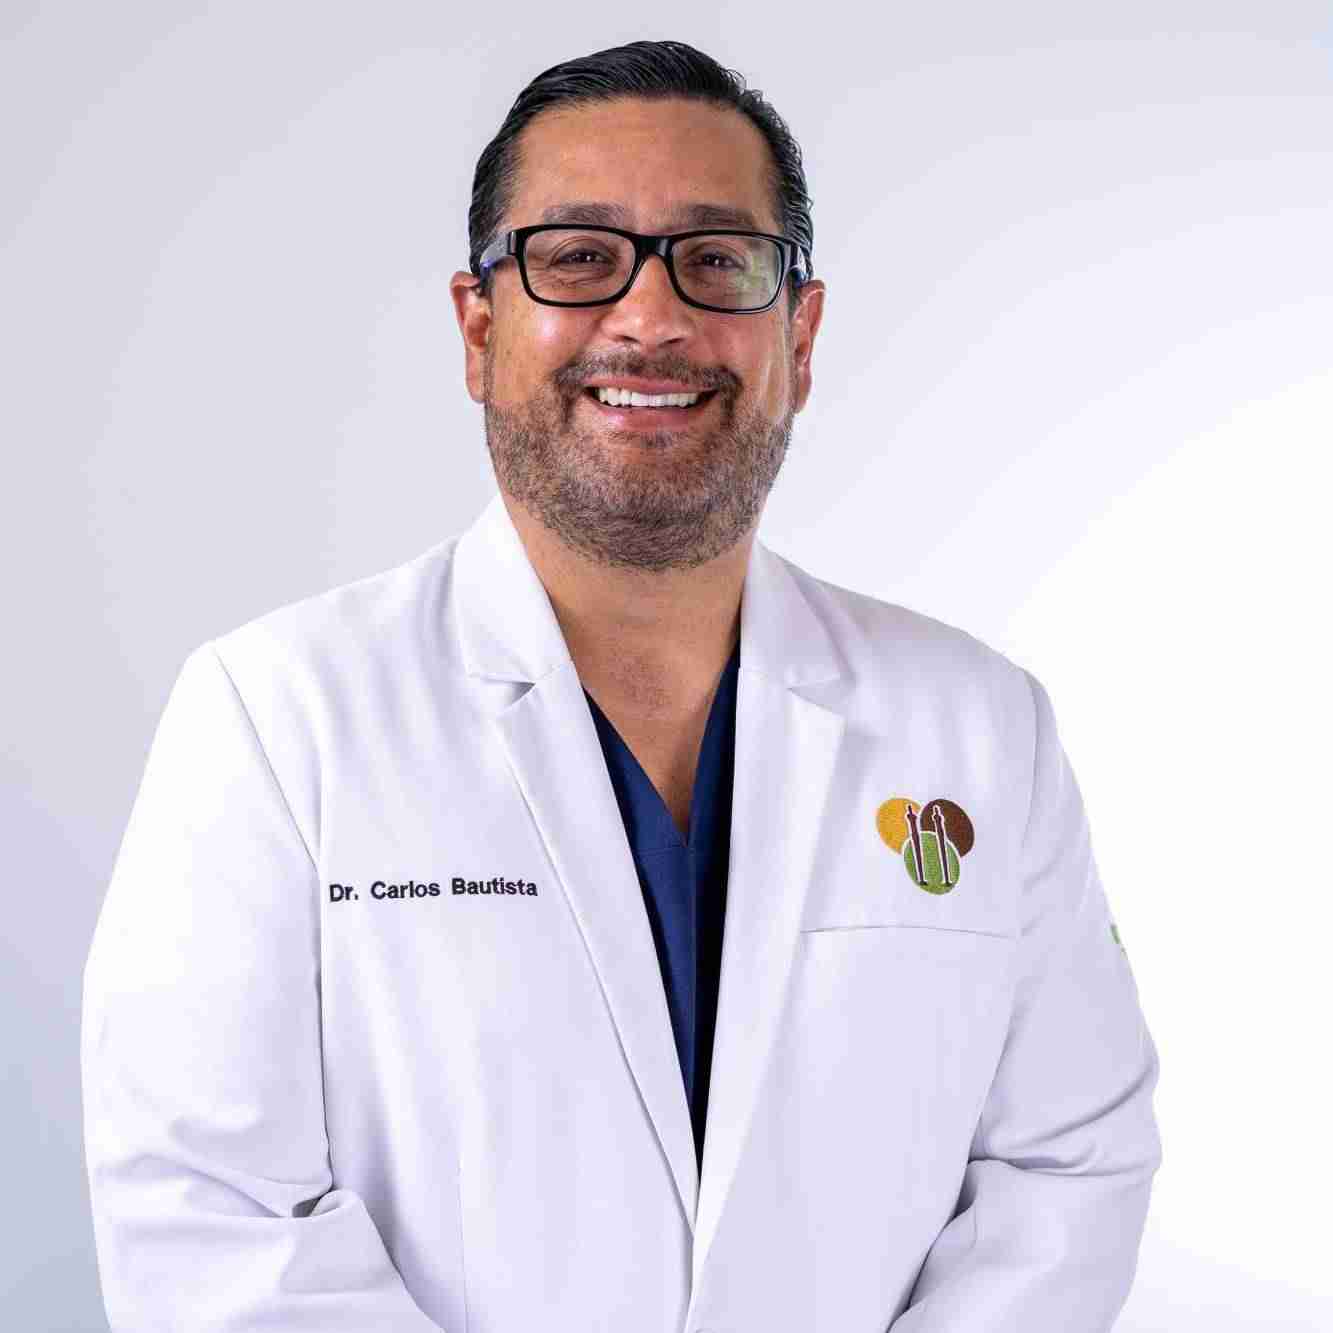 Dr. Carlos Bautista